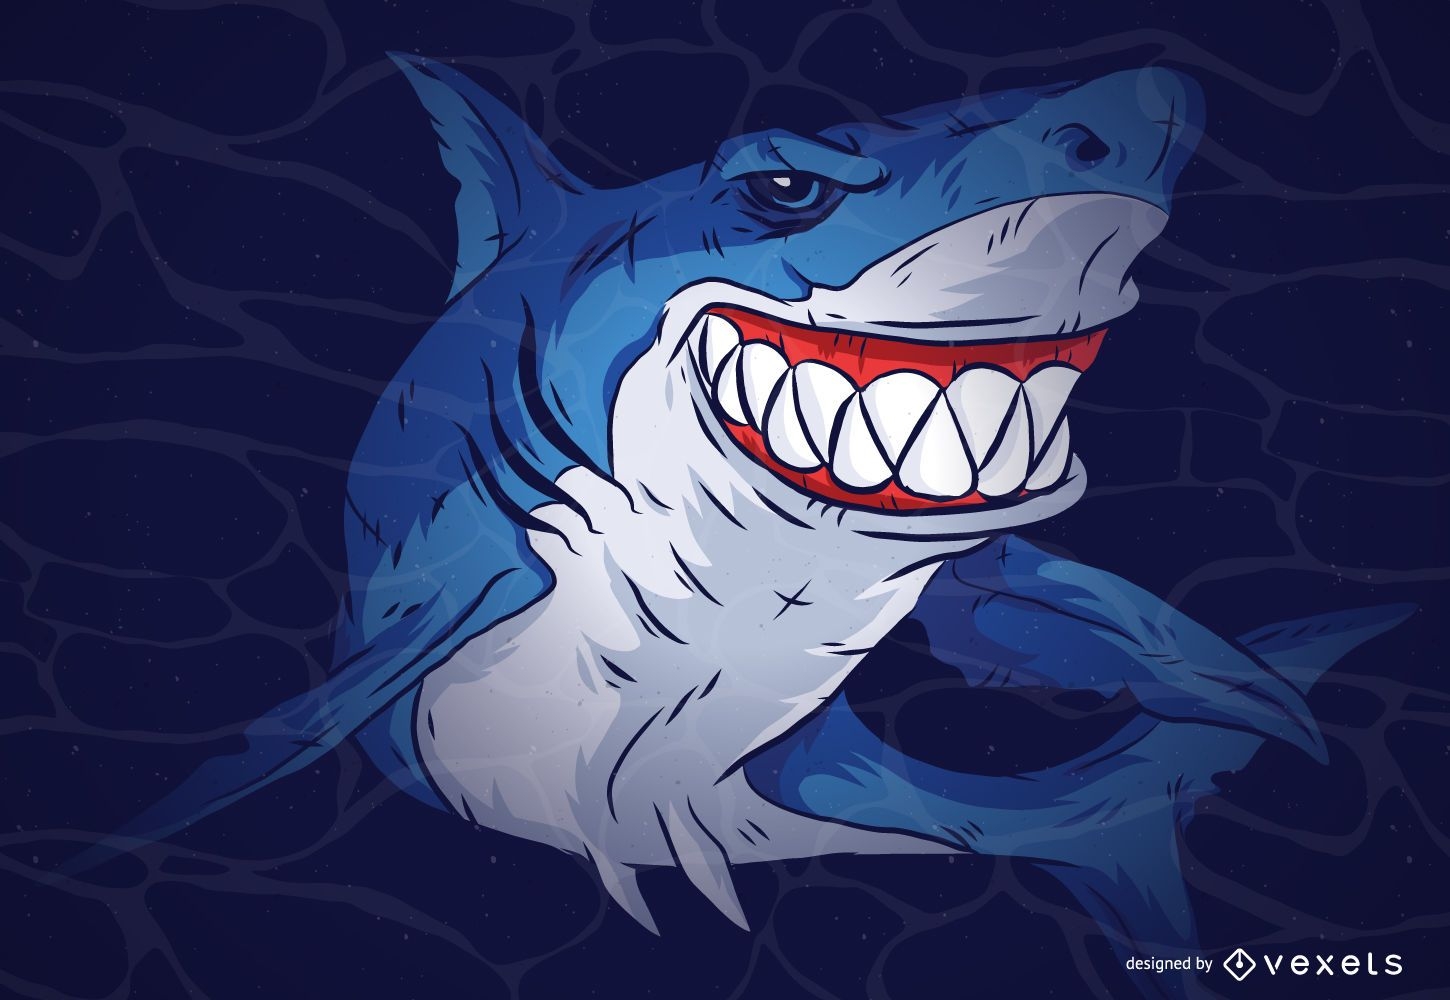 Shark cartoon illustration